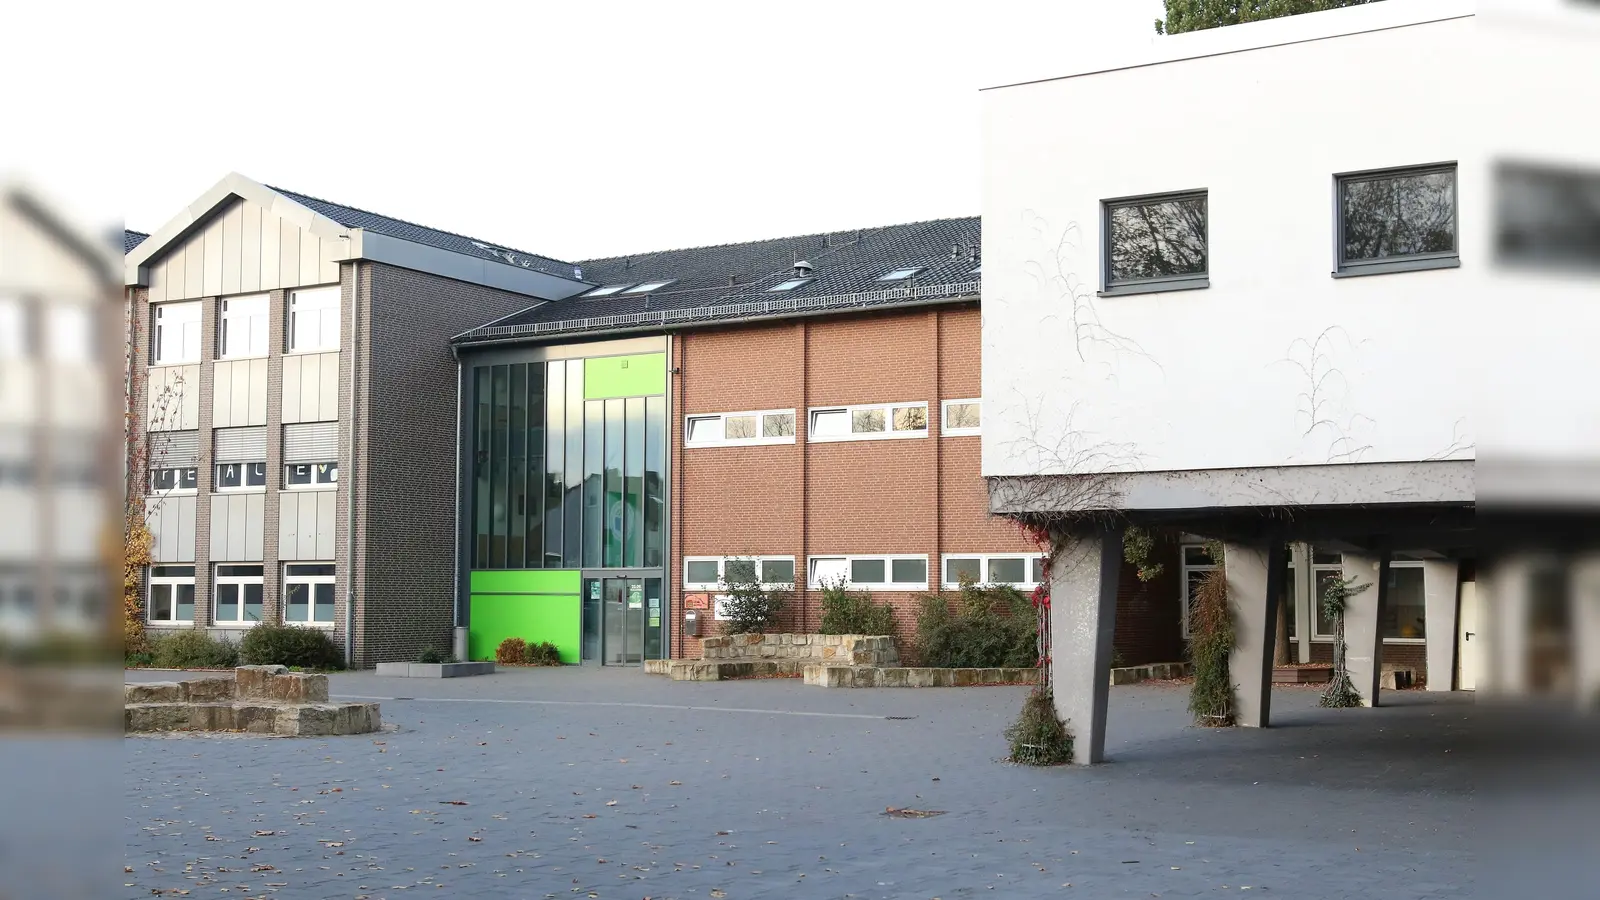 Ein Anbau für drei Klassenräume am Schulstandort in Rodenberg soll zwischen Mensa und Eingang der Förderschule enstehen. Außerdem soll die Mensa leicht versetzt werden.  (Foto: Borchers, Bastian)